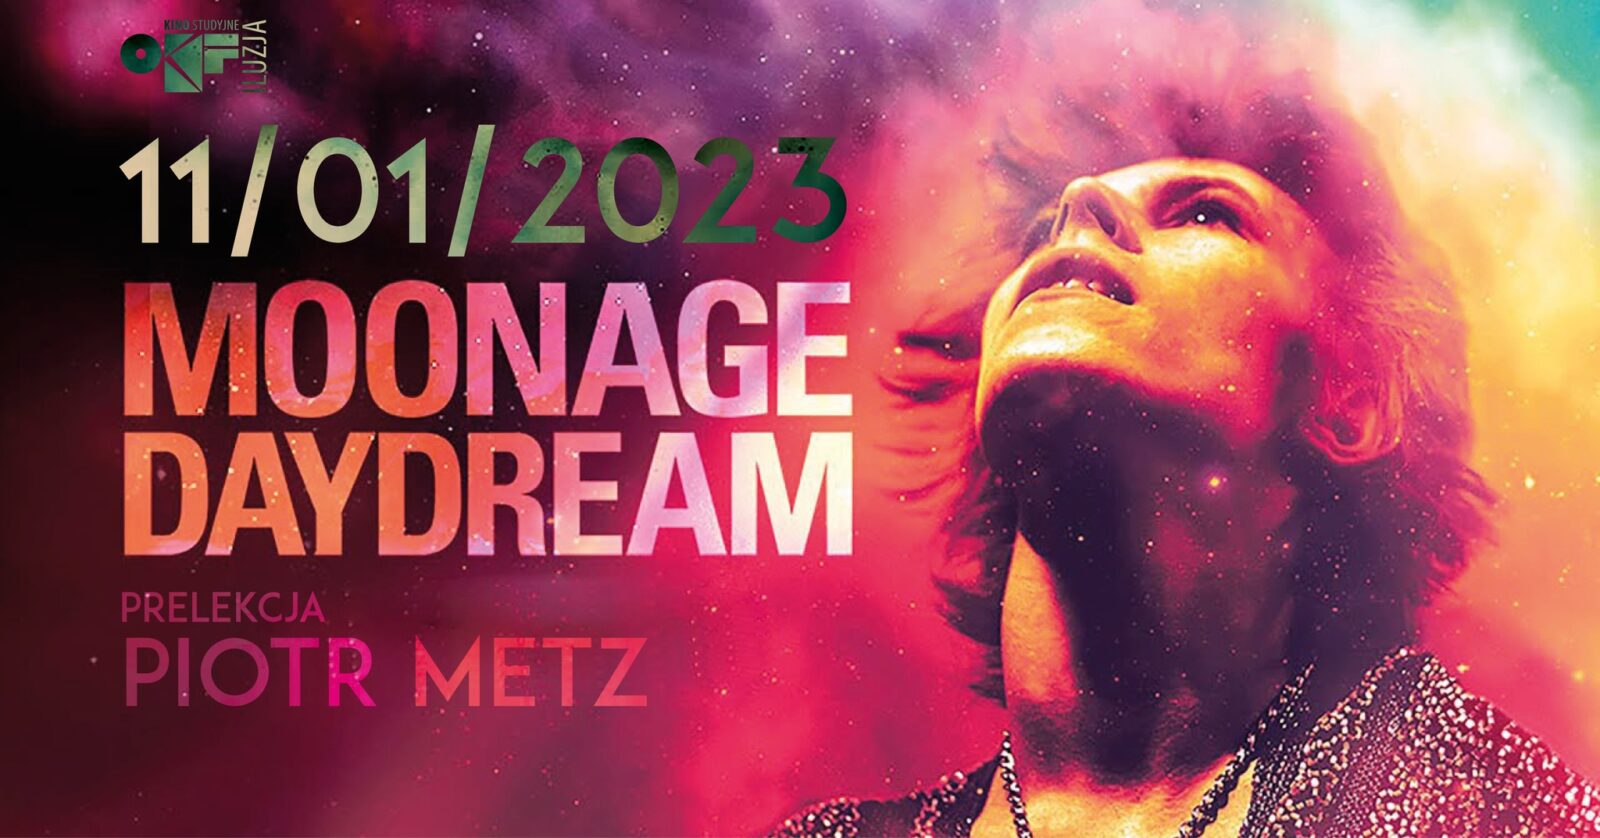 OKF. W Częstochowie odbędzie się pokaz specjalny filmu "Moonage Daydream" z udziałem Piotra Metza 8